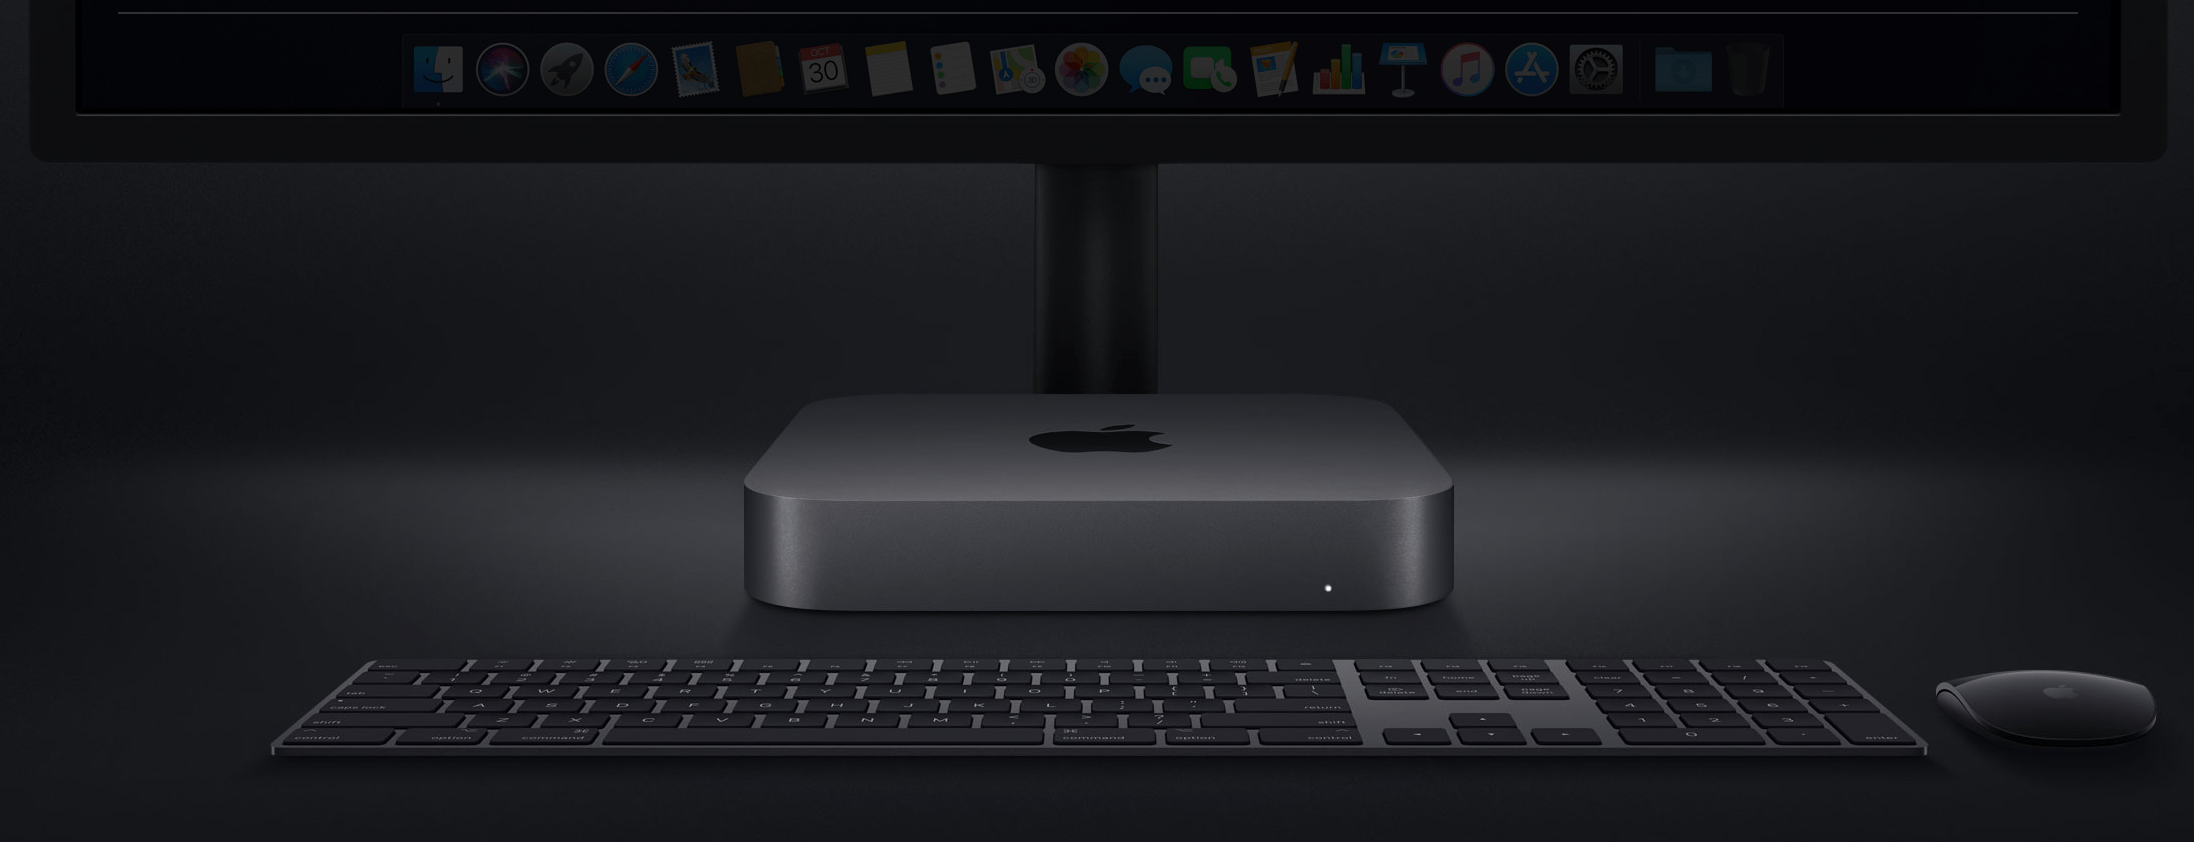 Mac Mini ออกรุ่นใหม่ครั้งแรกในรอบ 4 ปี เปลี่ยนดีไซน์ใหม่หมด!